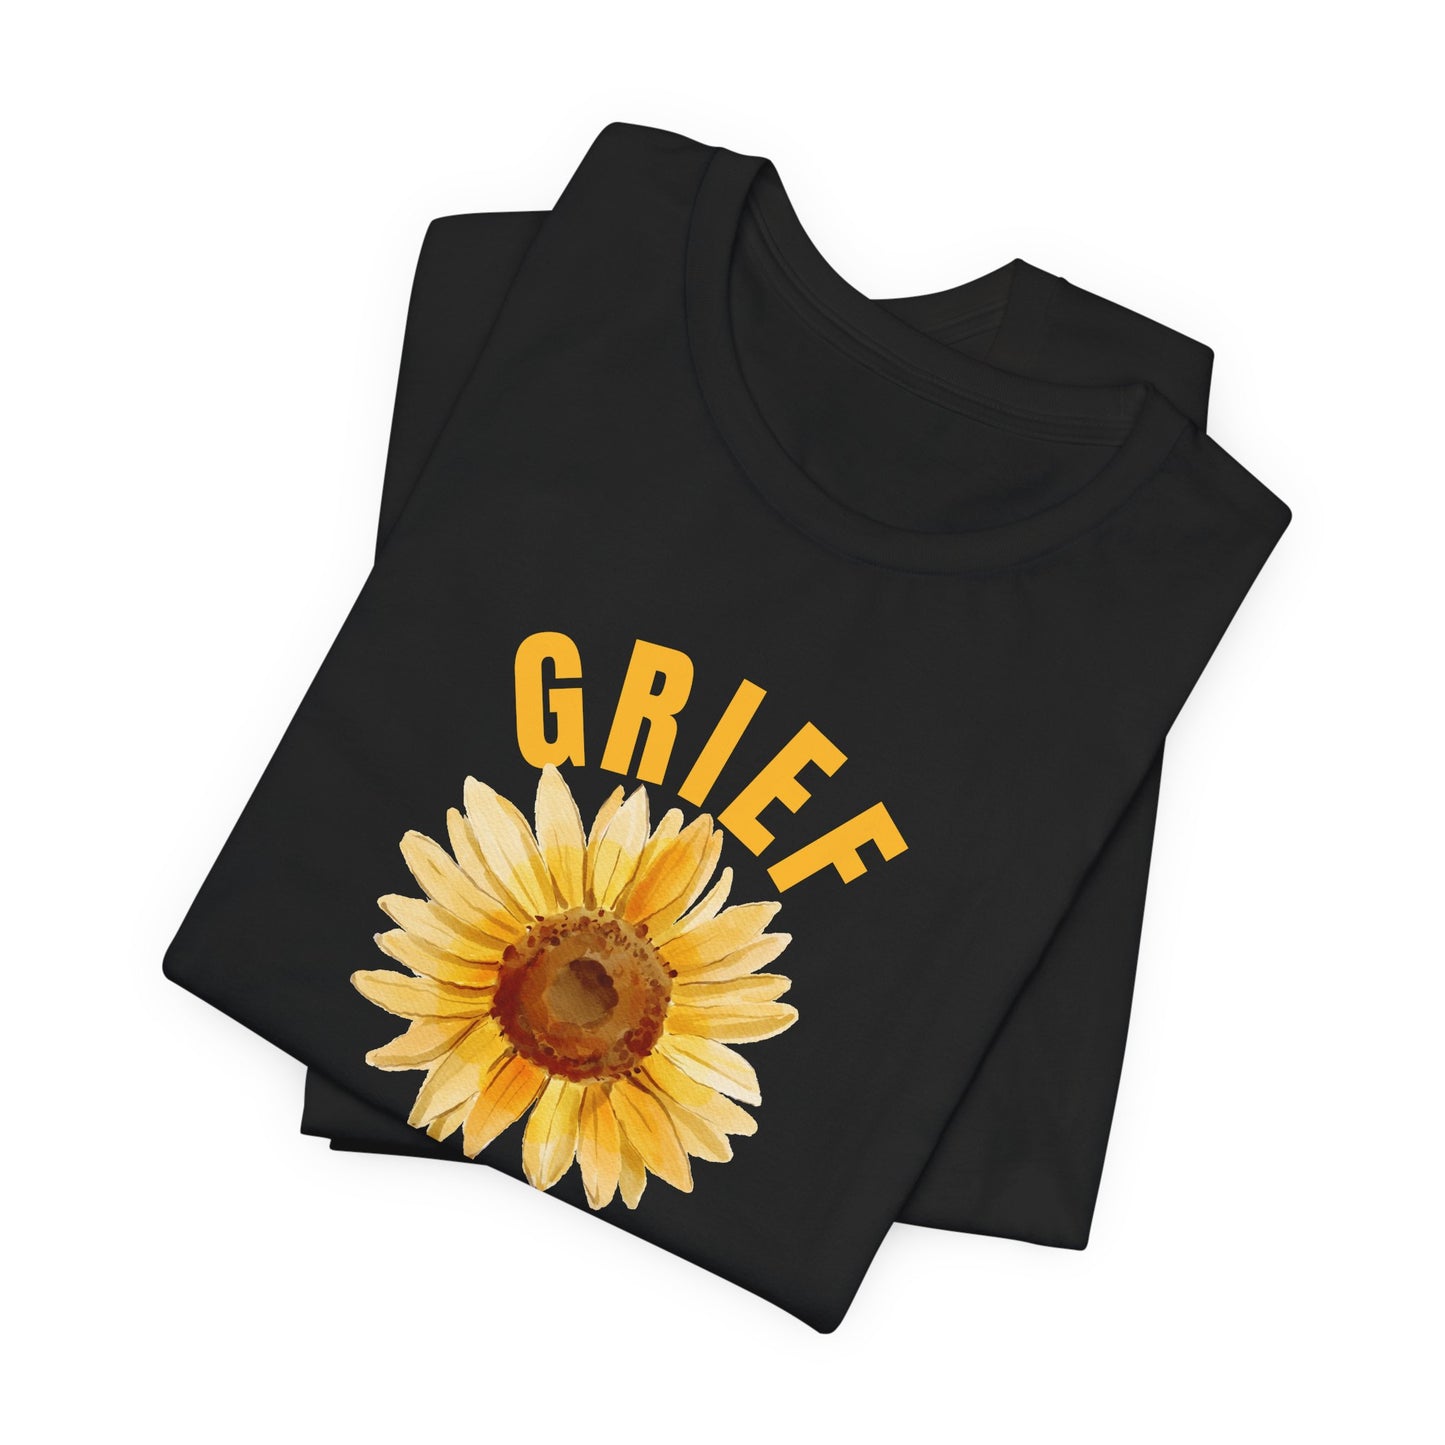 Black Bella Canvas 3001 t-shirt. Grief Survivor message with sunflower design.